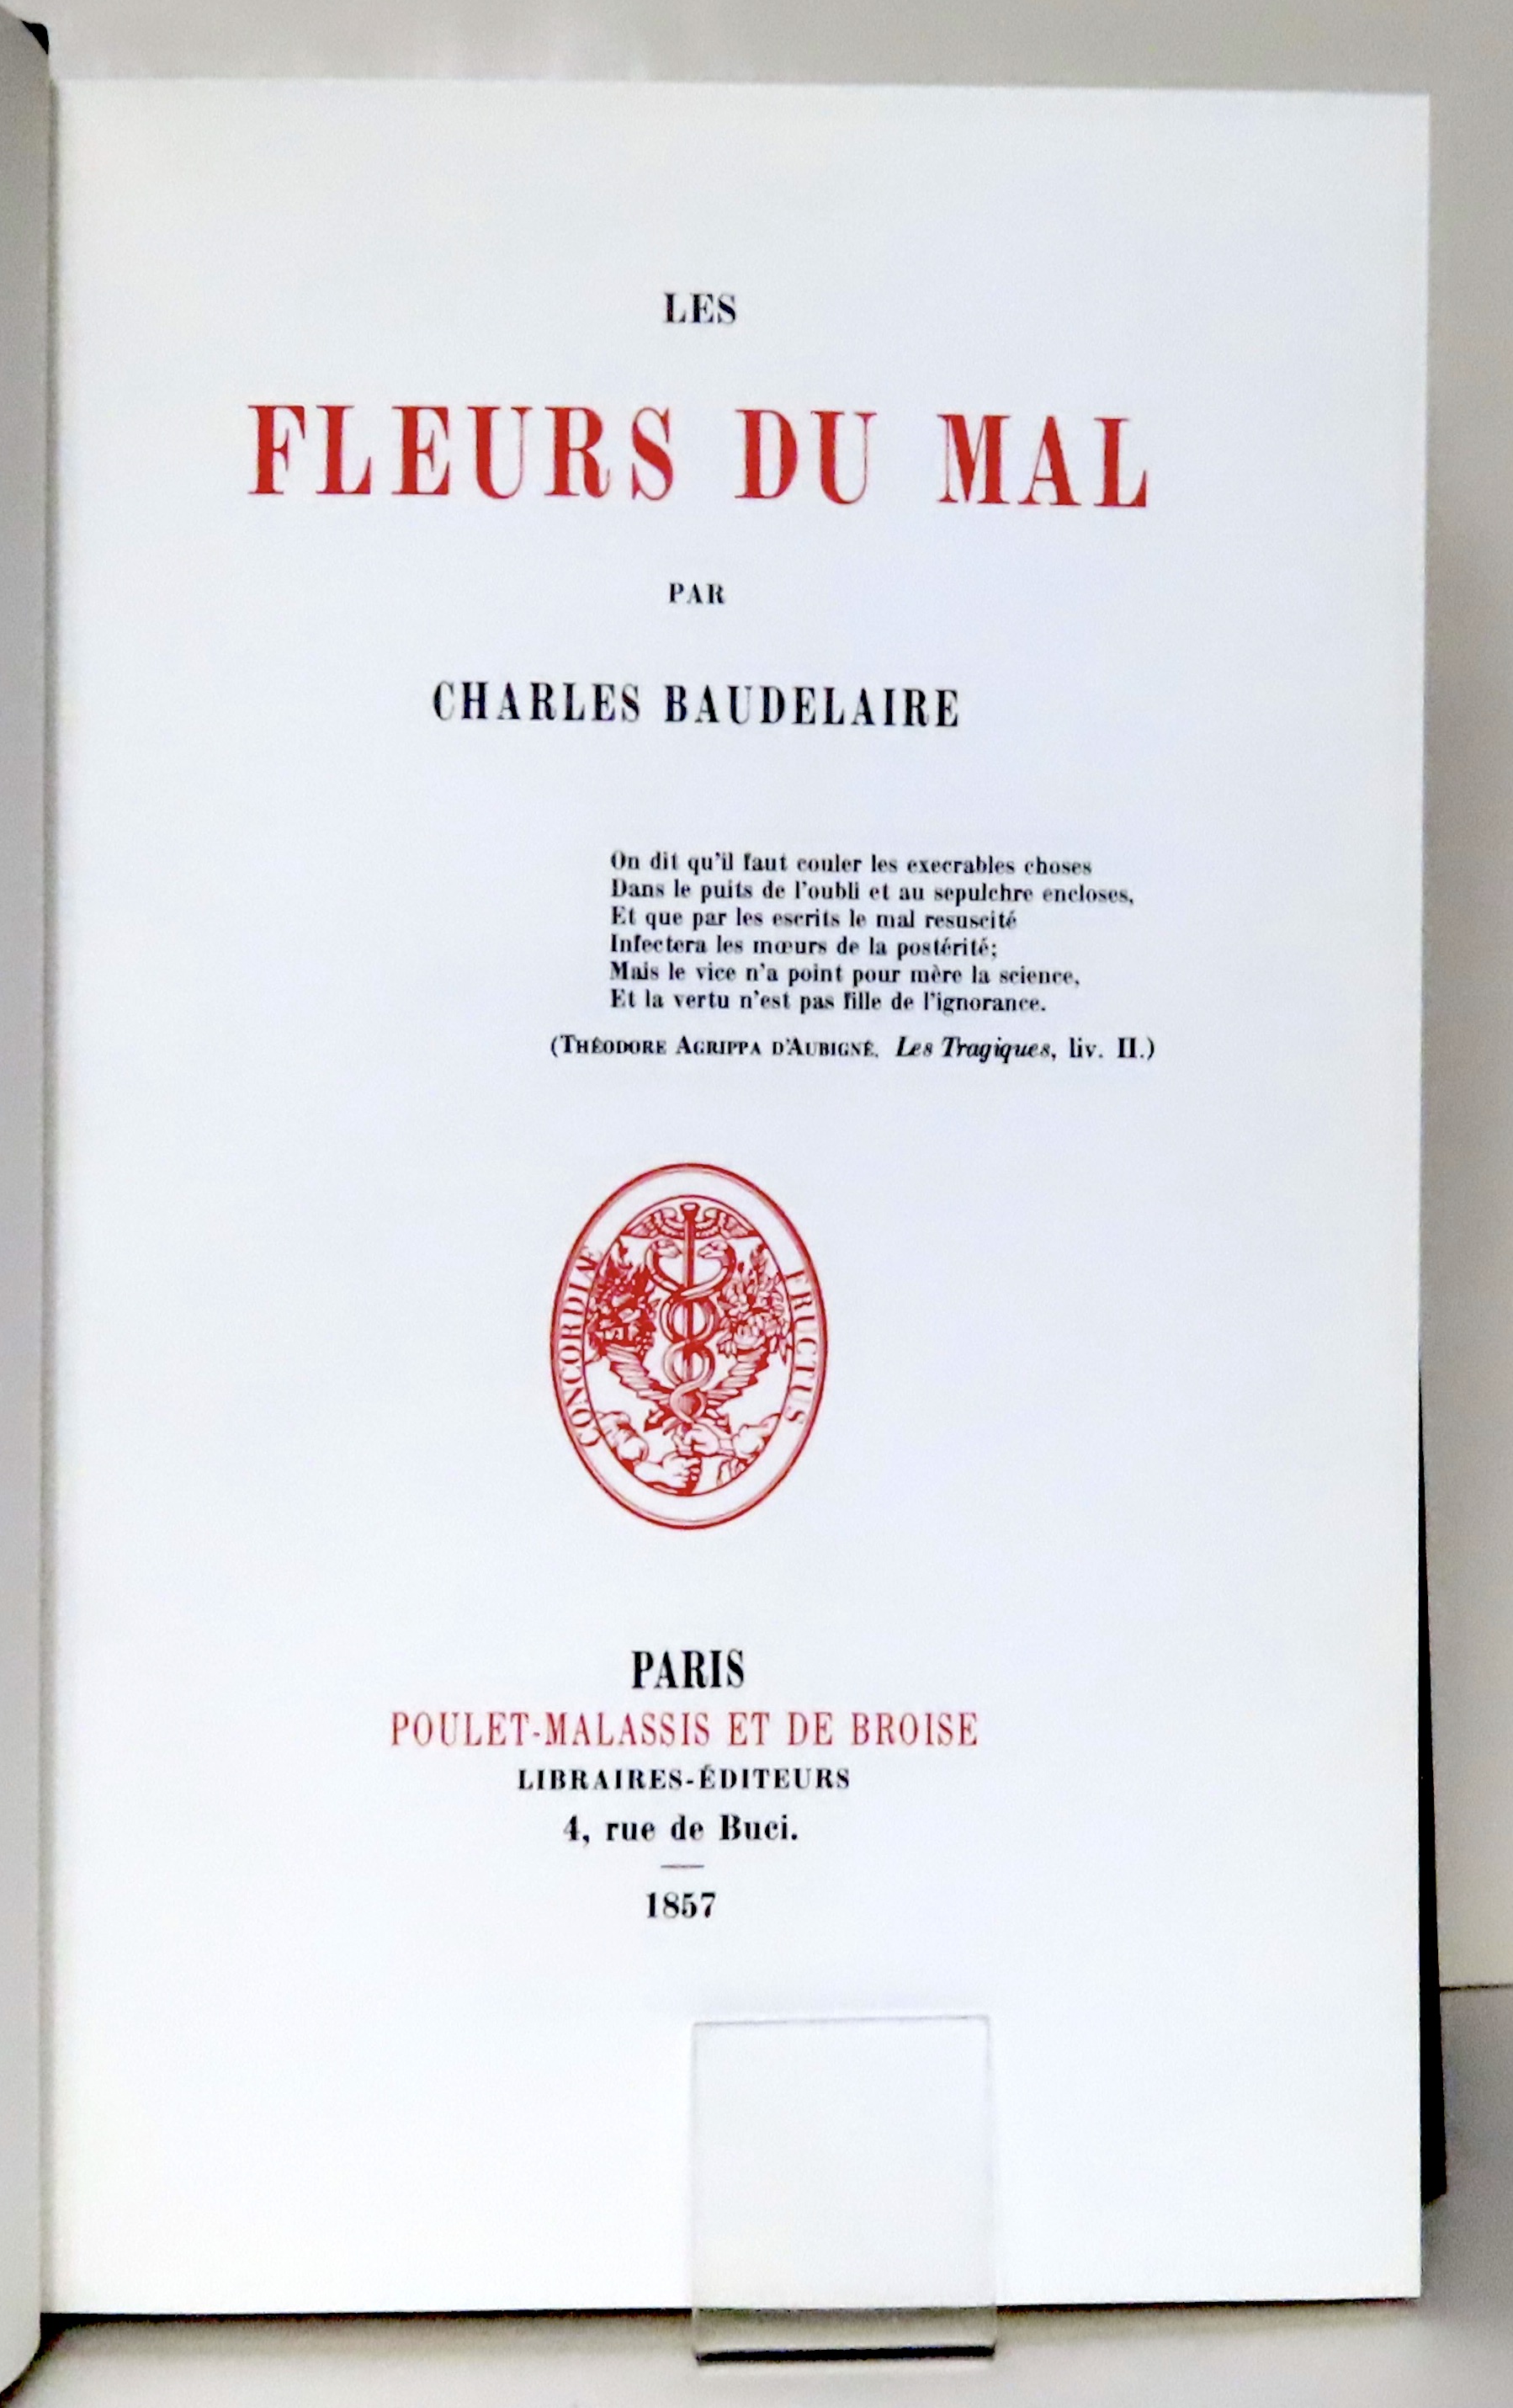 Les Fleurs du mal de Charles Baudelaire illustré par Rodin. by ...